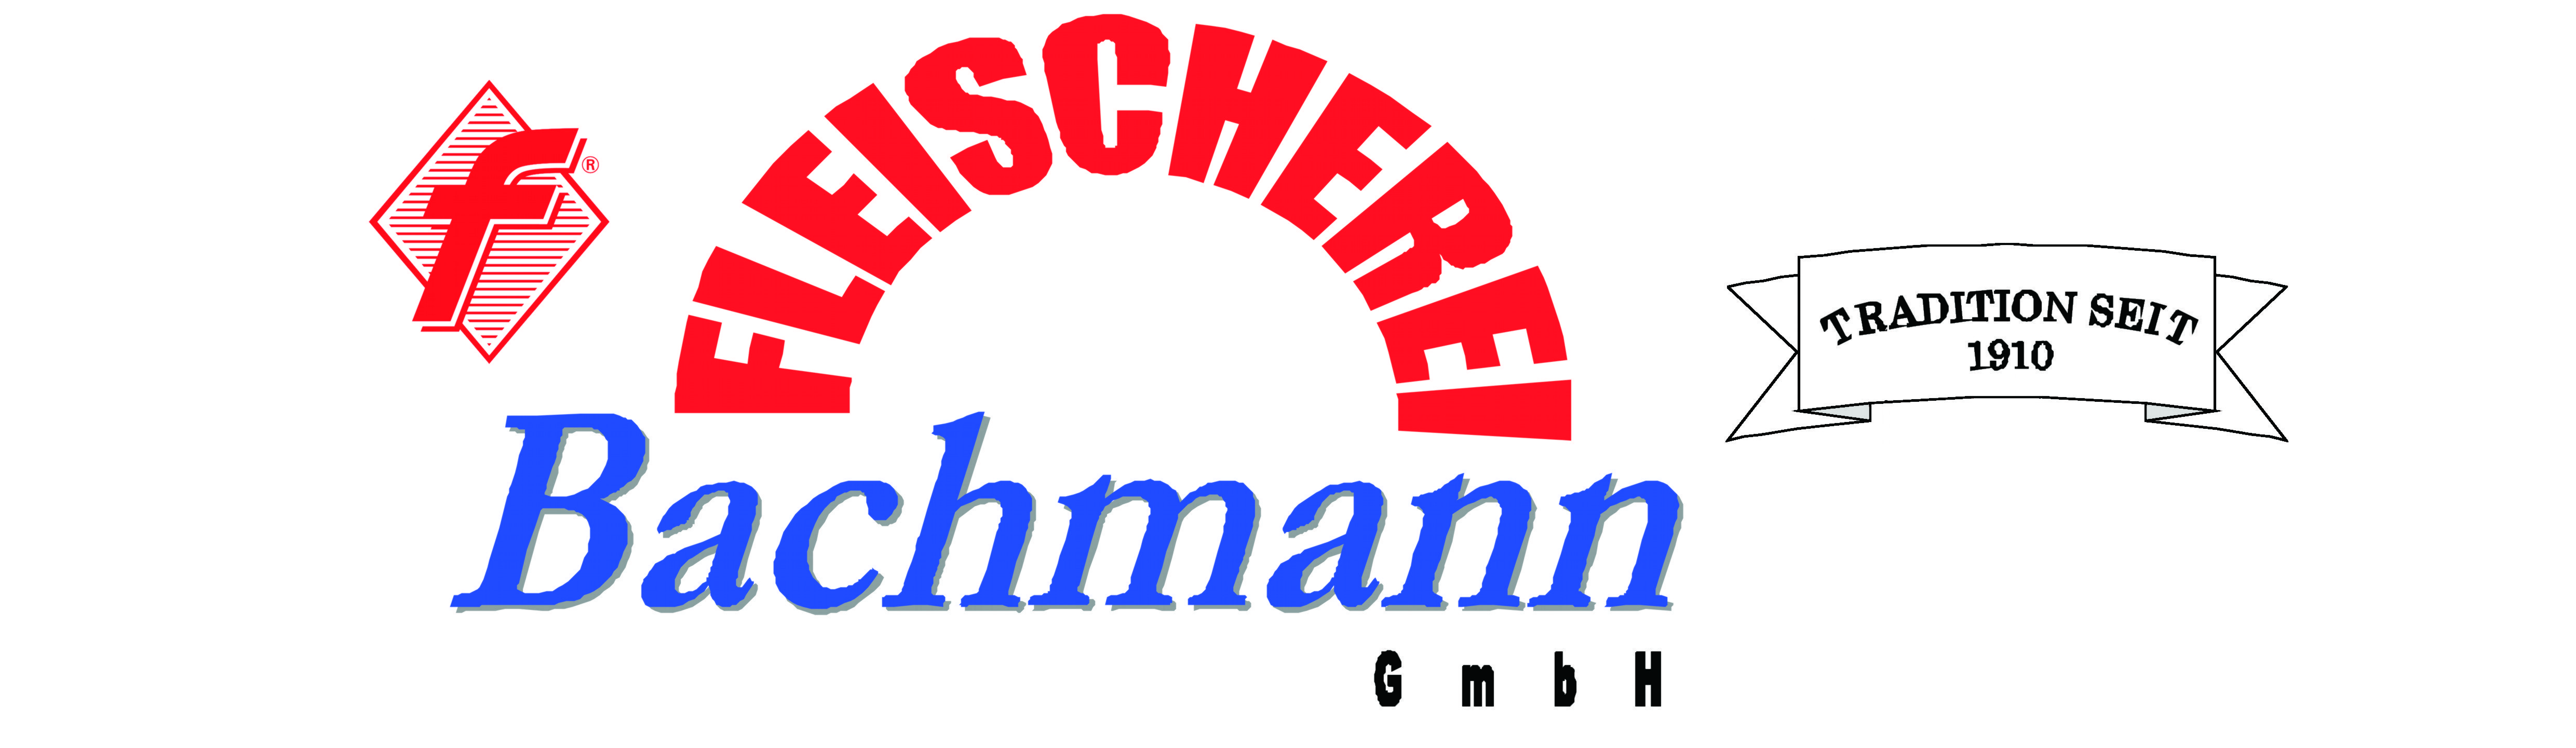 Homepage der FLEISCHEREI Banmann GmbH mit aktuellen Angeboten und Speiseplänen.